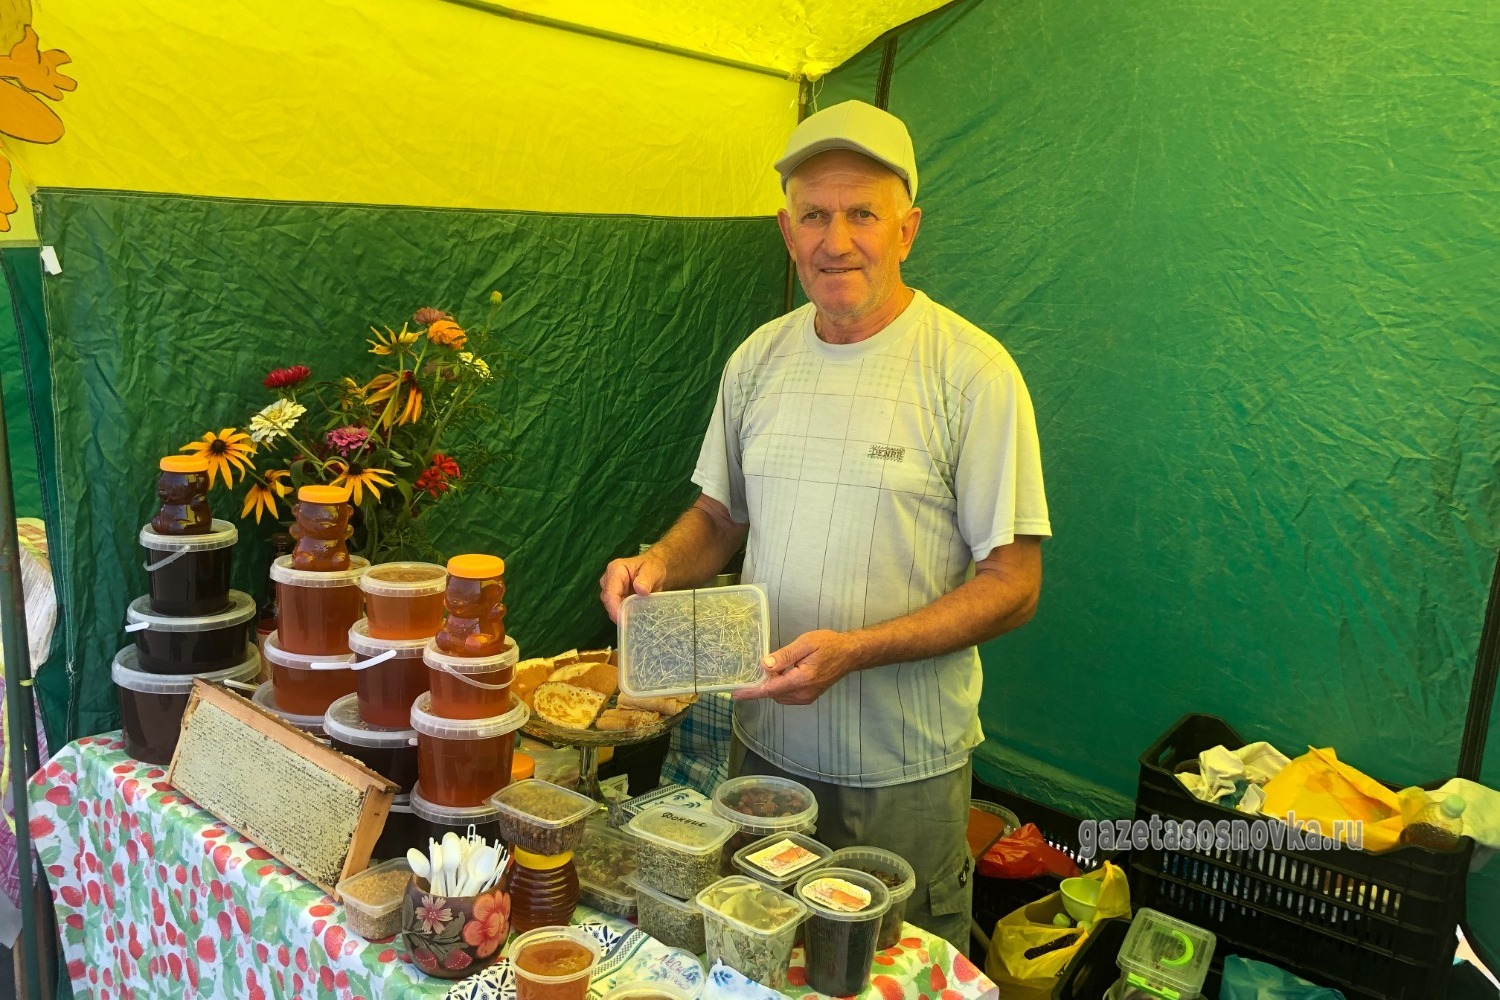 У Петра Каданцева можно приобрести продукты пчеловодства и сушёные травы для чая